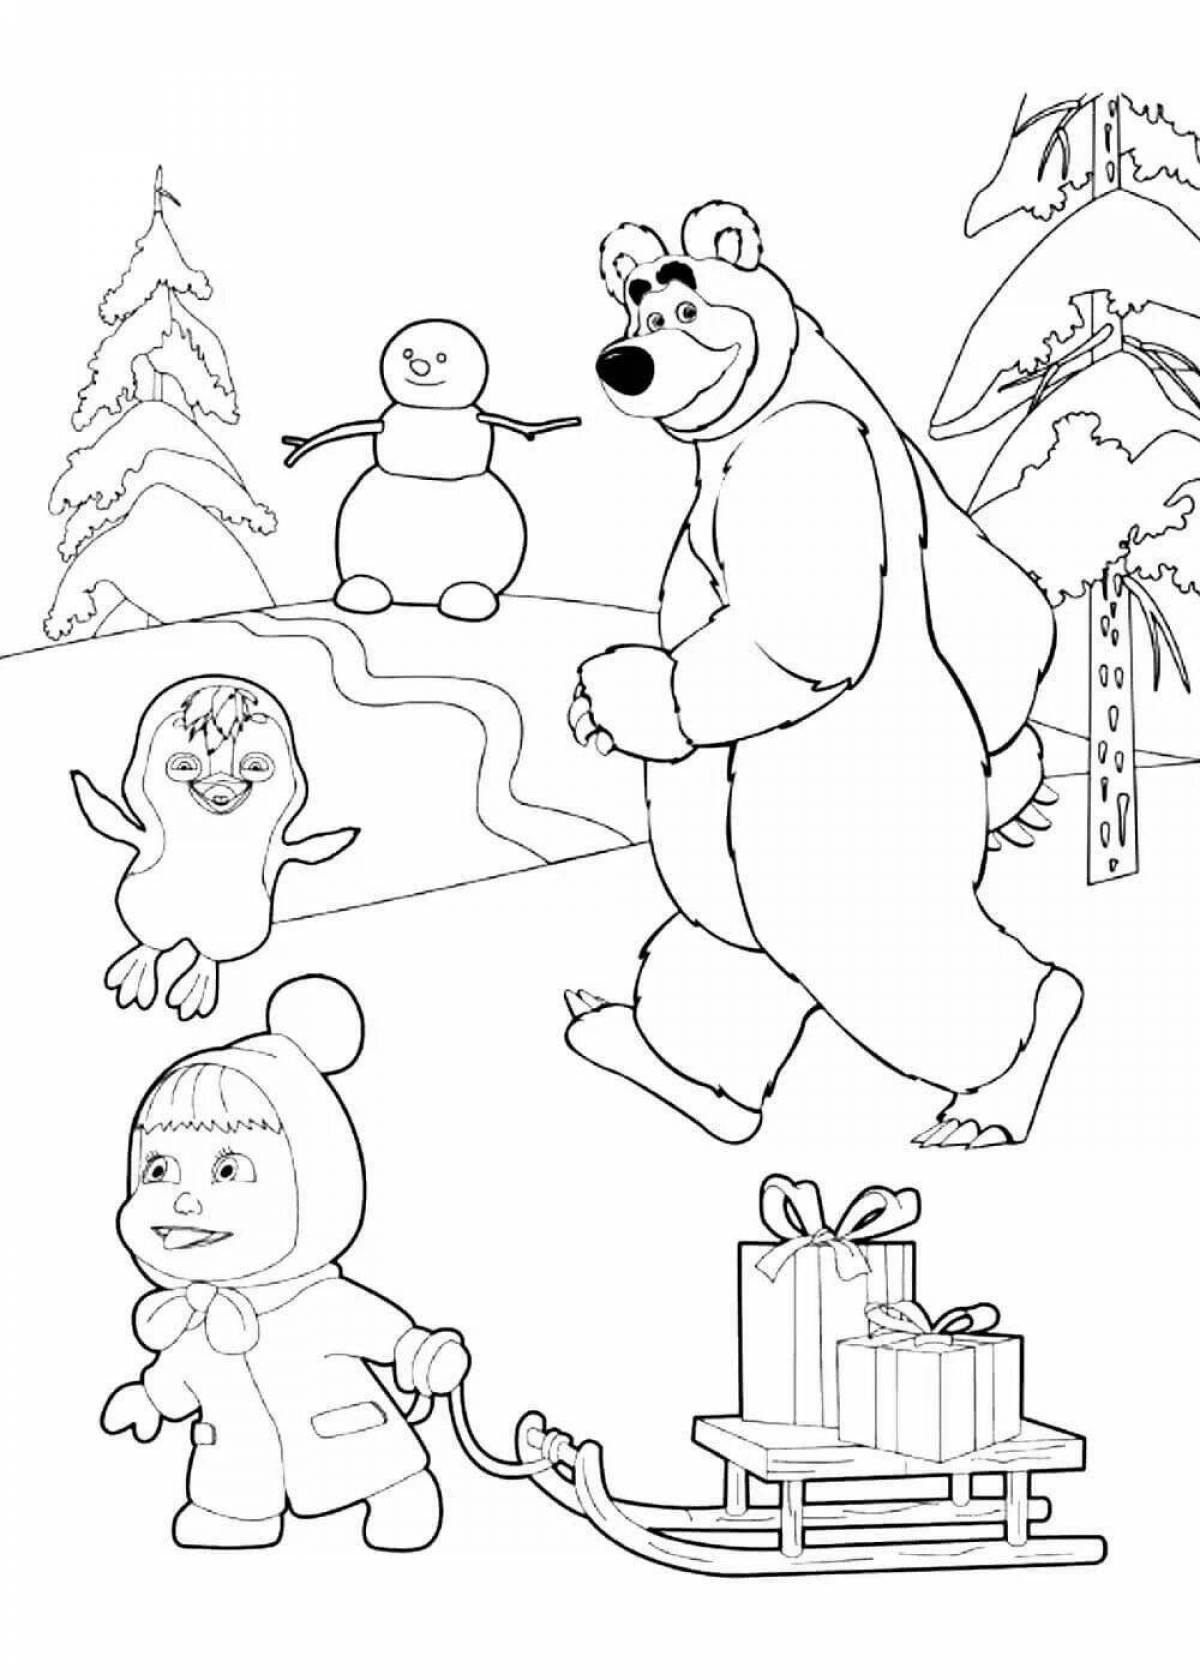 Раскраска маша и медведь 2. Новогодняя раскраска Маша и медведь печать. Детские разукрашки Маша и медведь. Раскраски для детей 5 лет Маша и медведь. Маша и медведь Новогодняя раскраска.